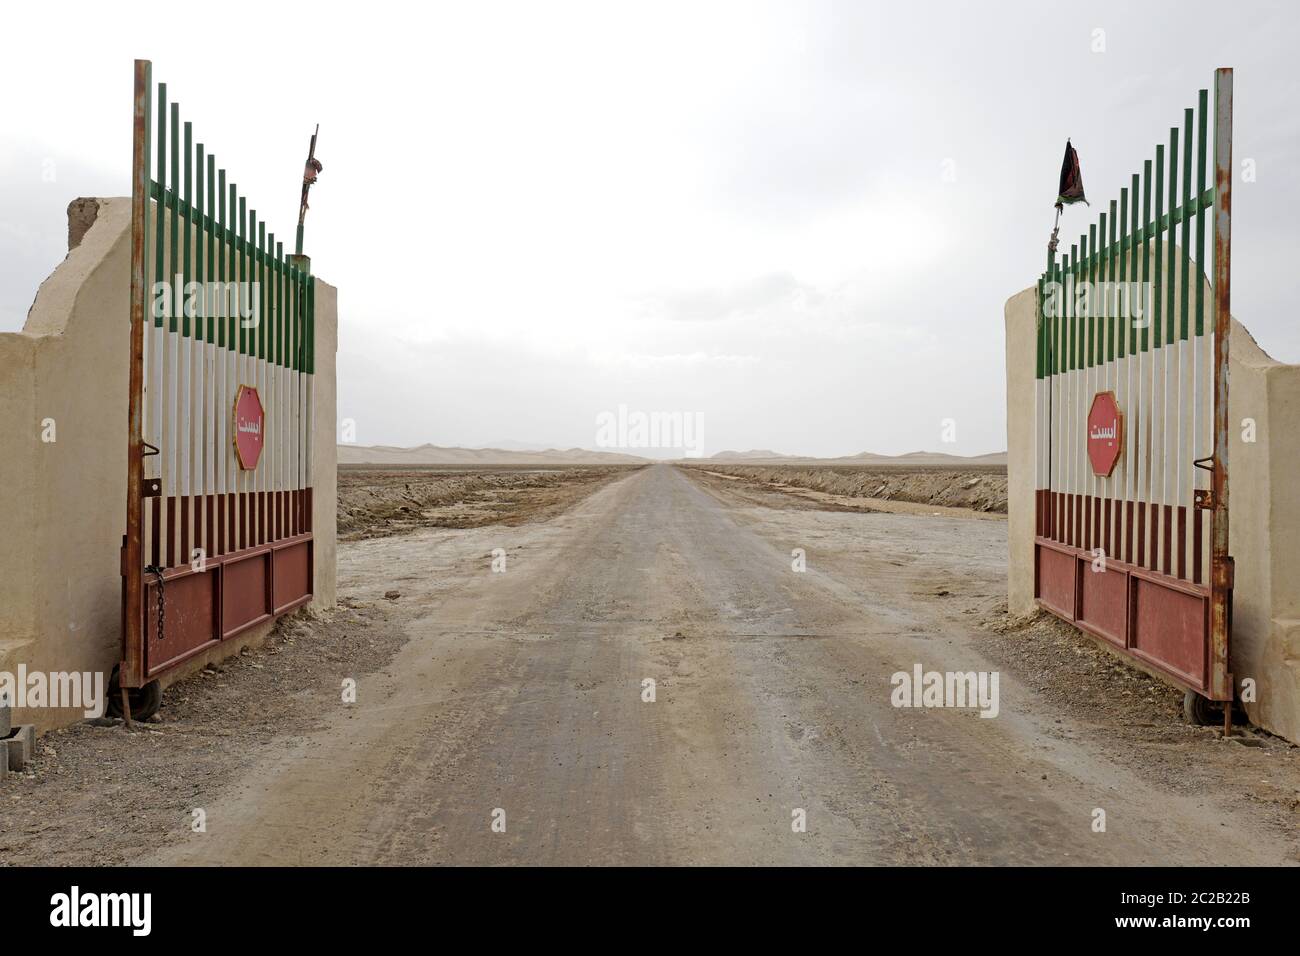 Porta d'ingresso del lago salato nel deserto, con colori della bandiera iraniana, a Varzaneh, Iran. Foto Stock